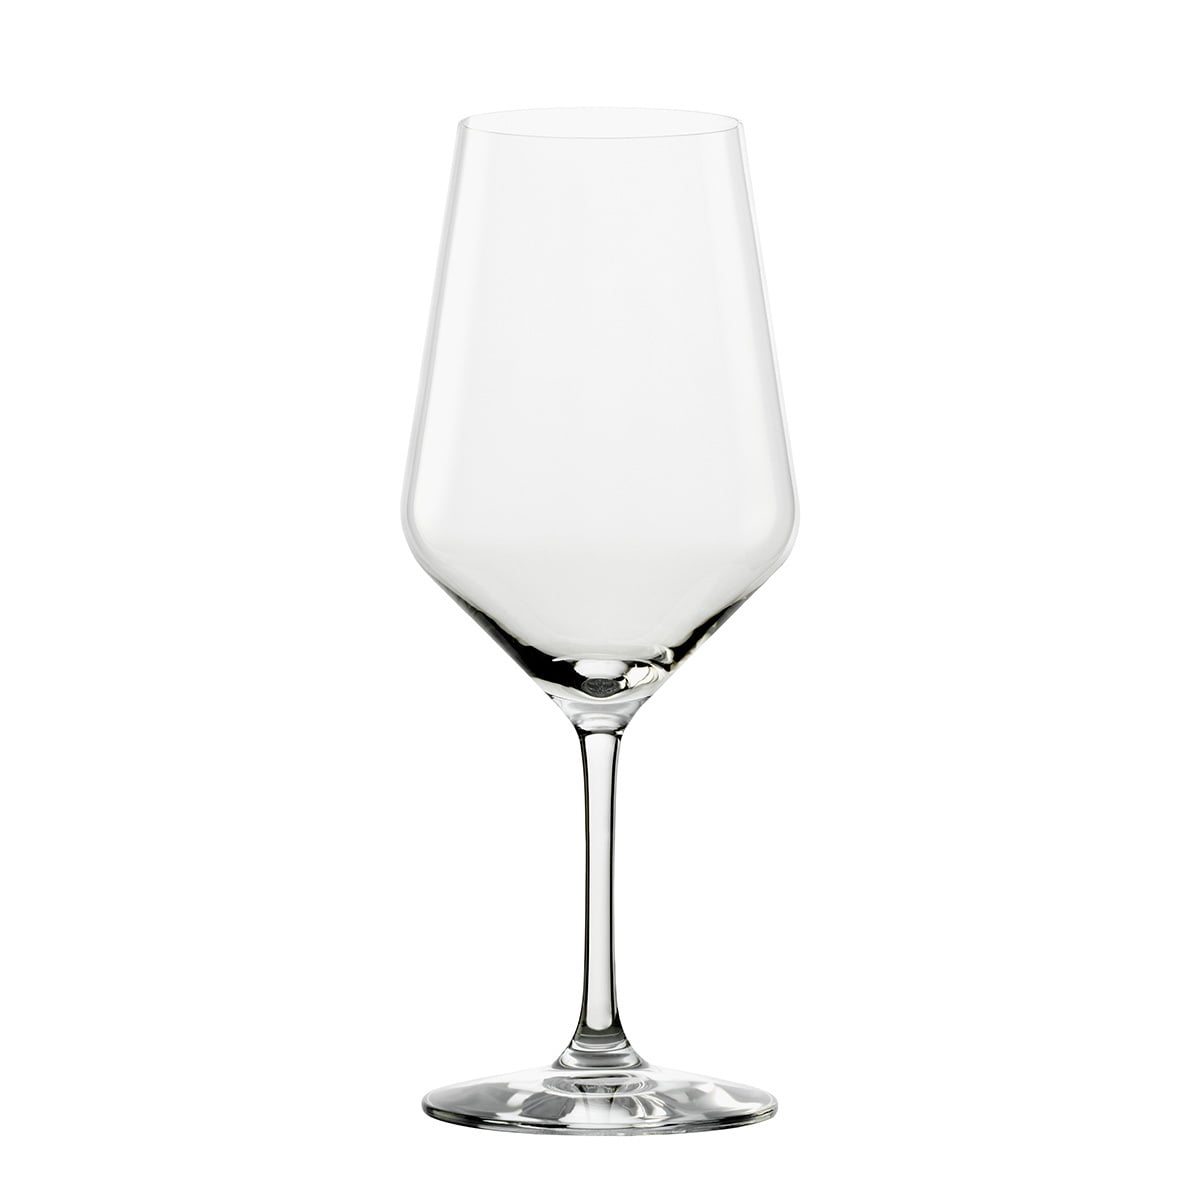 Stölzle Lausitz Power 14 oz. Clear Wine Glass & Reviews